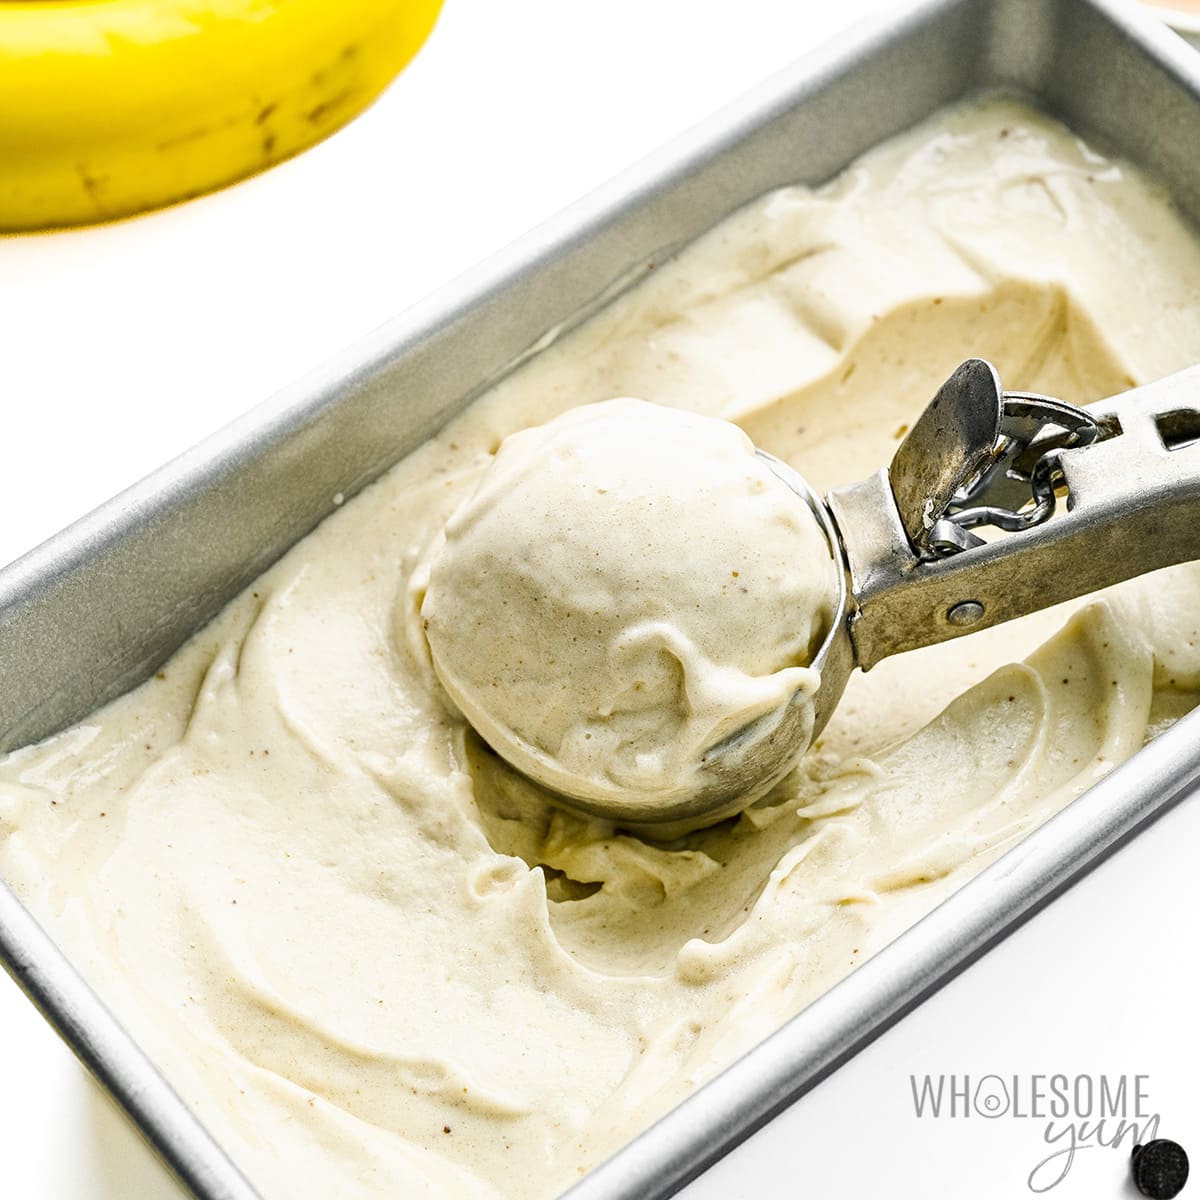 Banana ice cream with scoop.